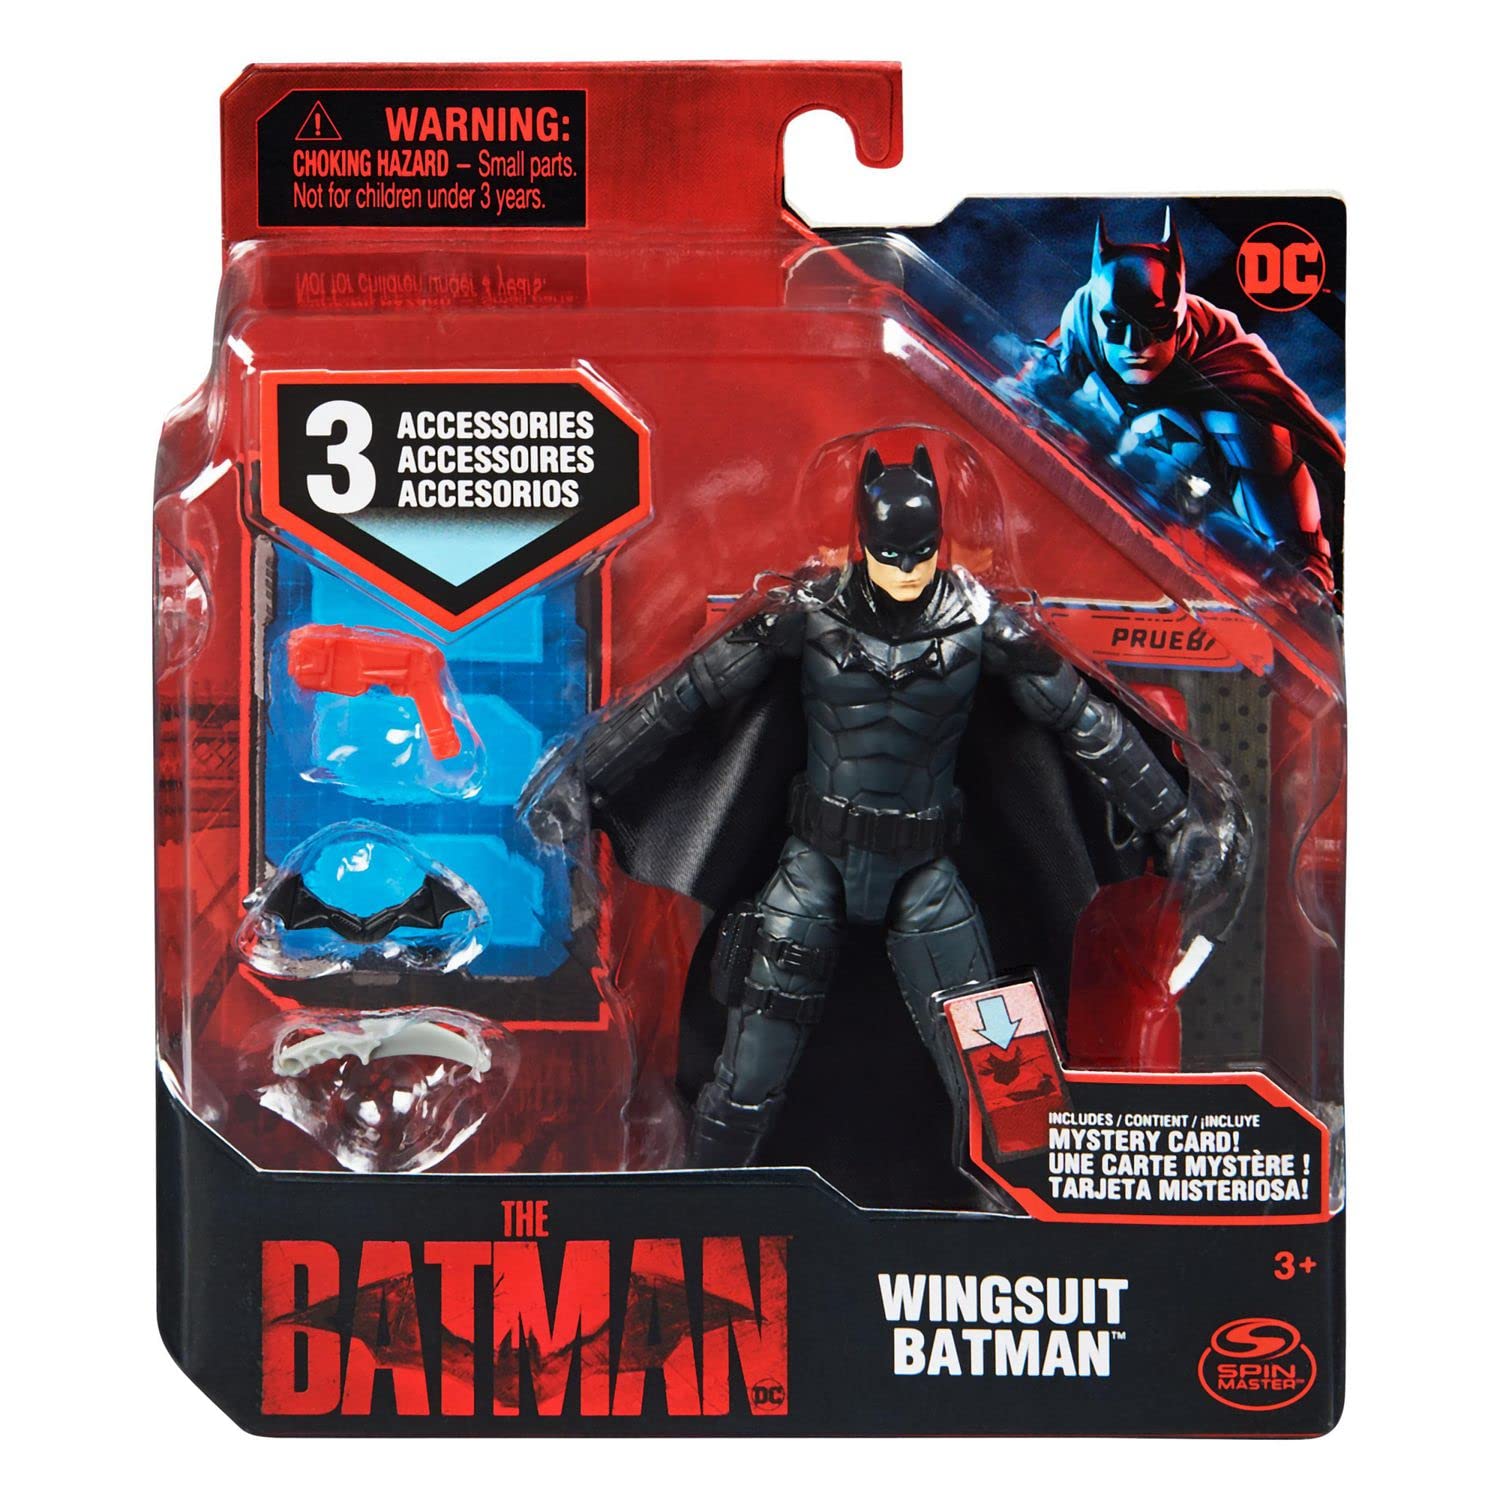 DC Wingsuit Batman 4